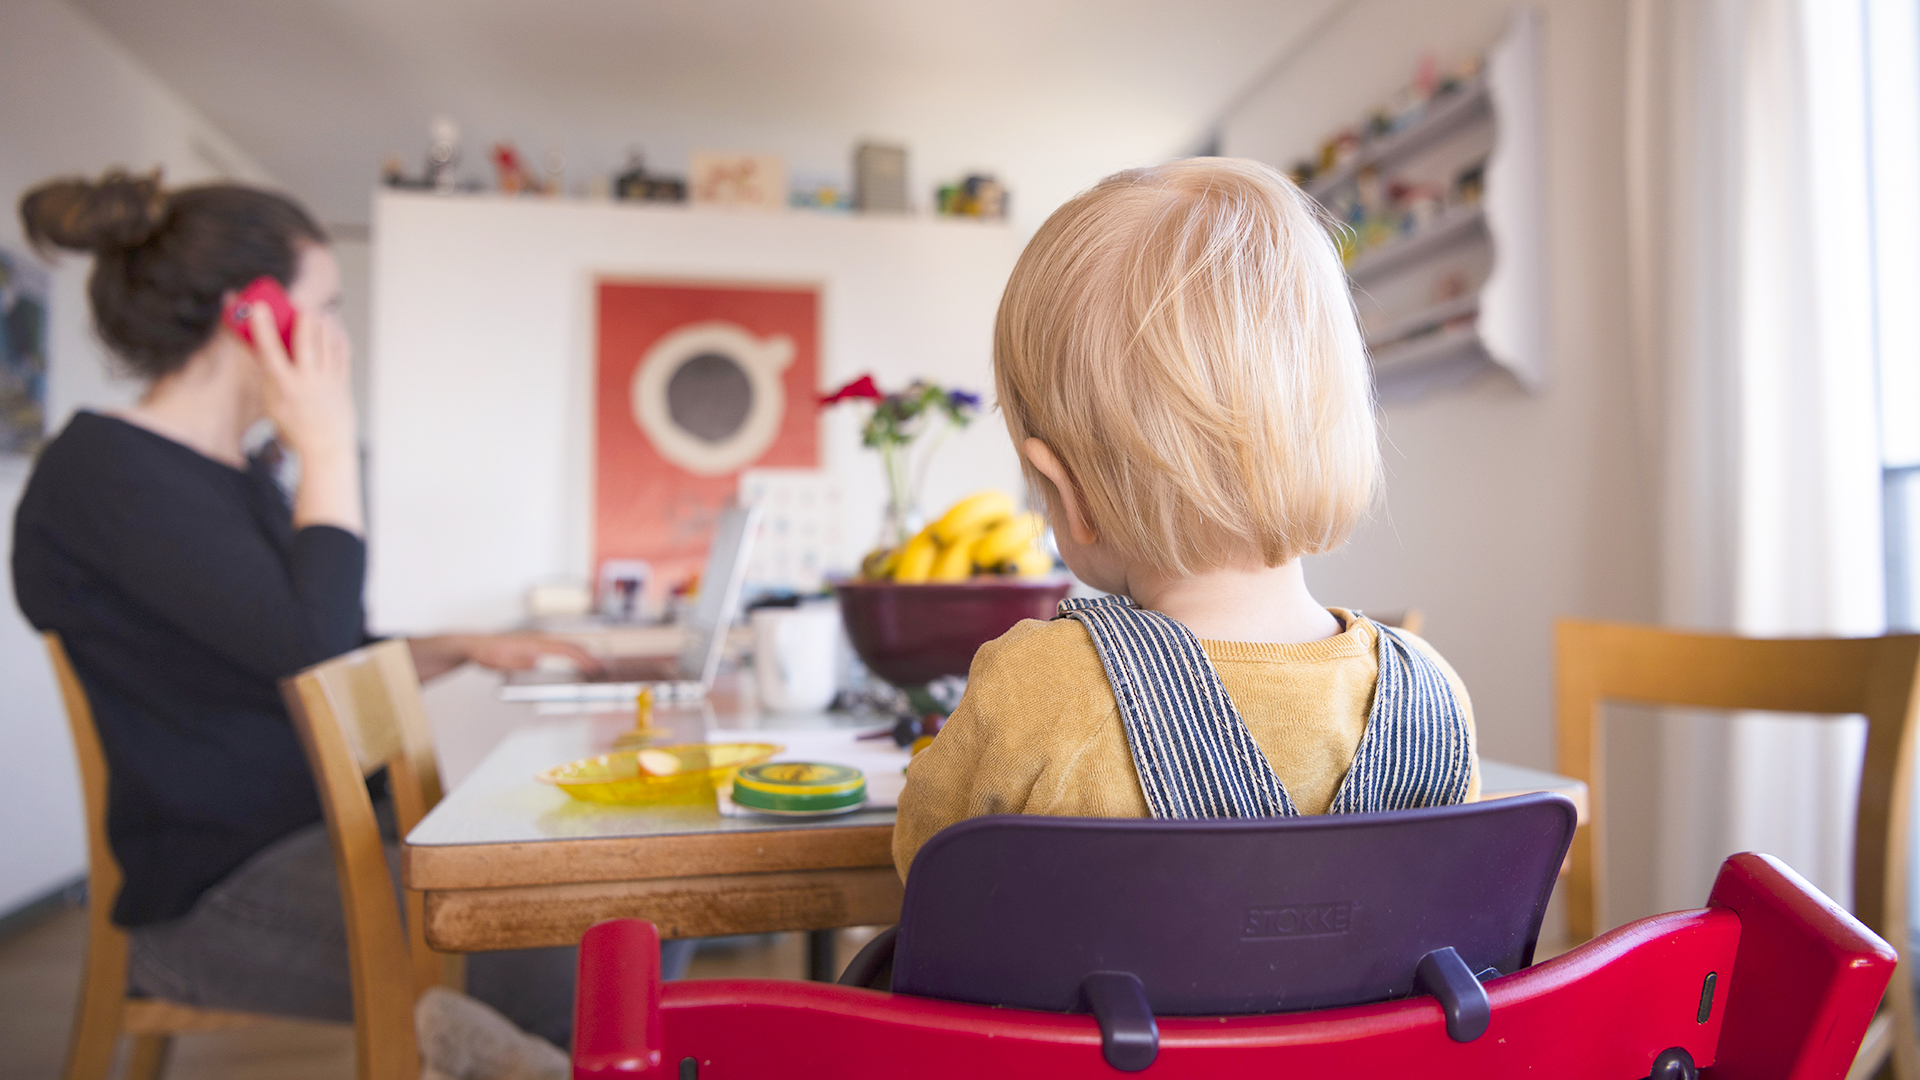  Eine Frau sitzt im Homeoffice an ihrem Laptop und telefoniert, während ihr Kind neben ihr in einem Kinderstuhl am Tisch sitzt. | Christian Beutler/KEYSTONE/dpa